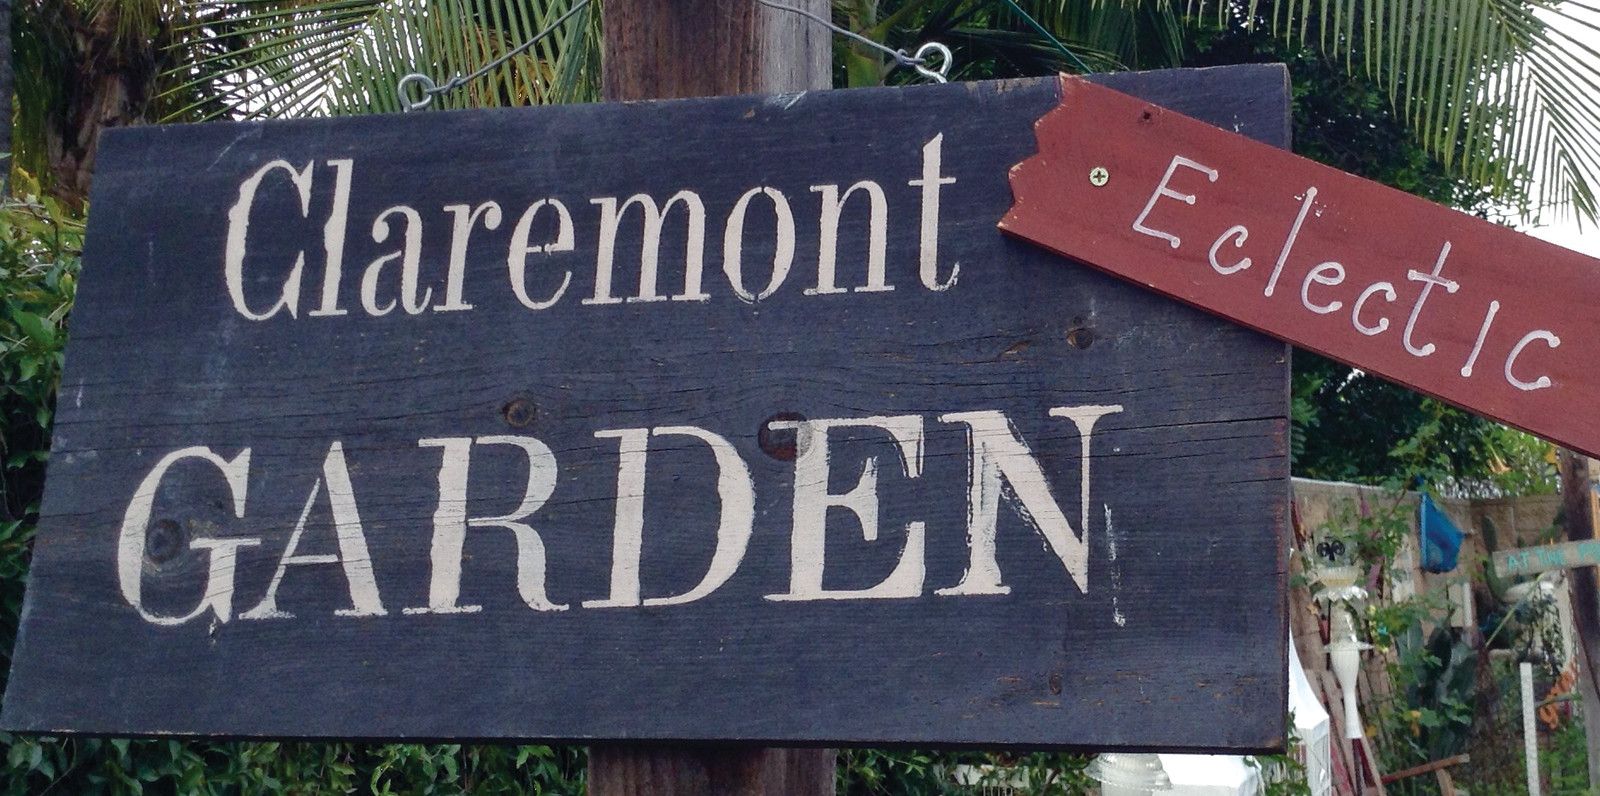 Annual Garden Tour Claremont Garden Club